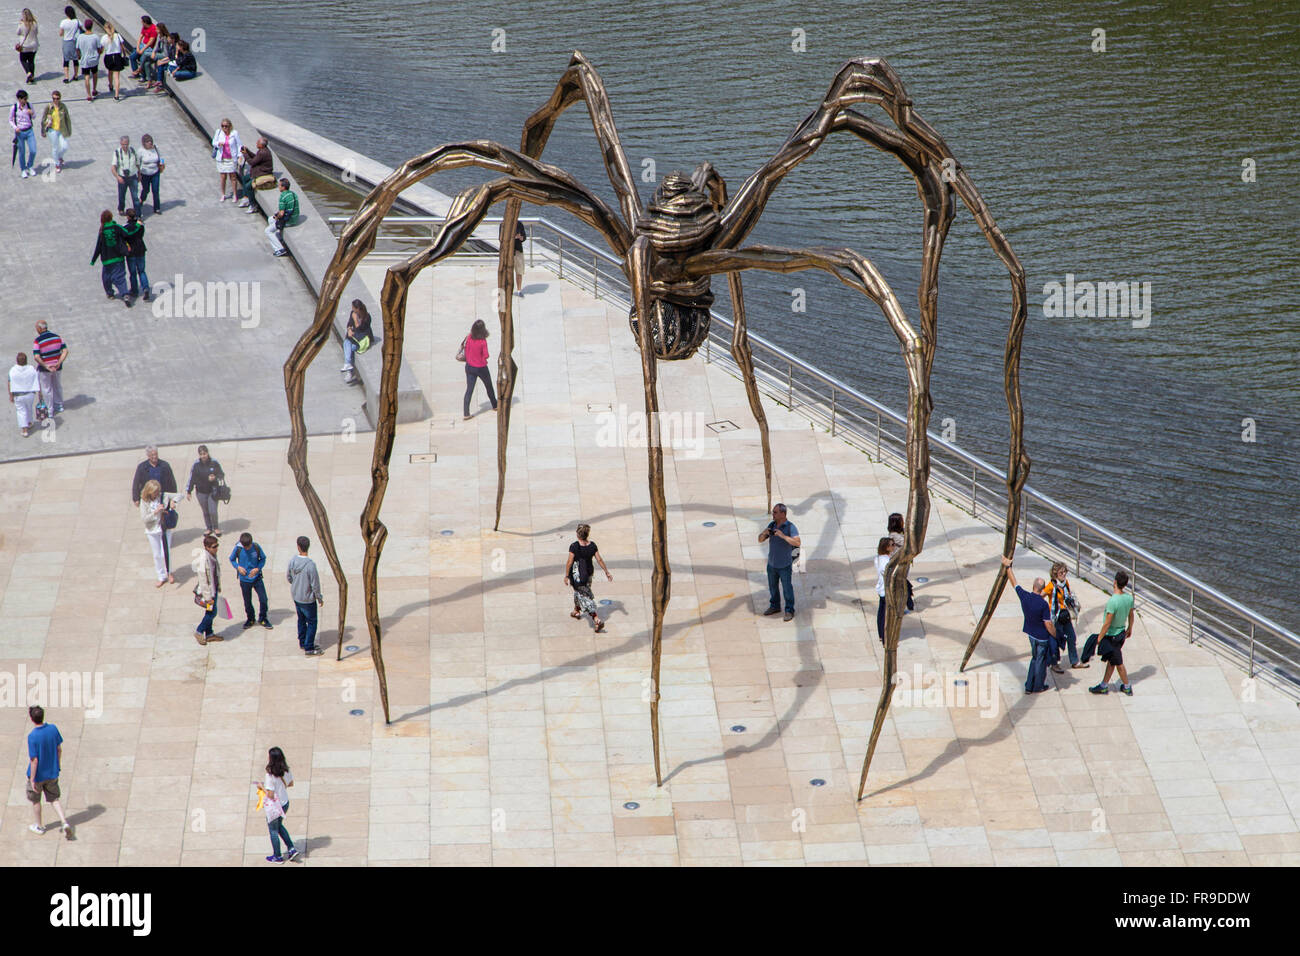 Spinne Skulptur, geschaffen von Louise Bourgeois im Jahr 1999, zwischen dem Guggenheimmuseum und Fluss Nervion, Bilbao, Spanien. Stockfoto